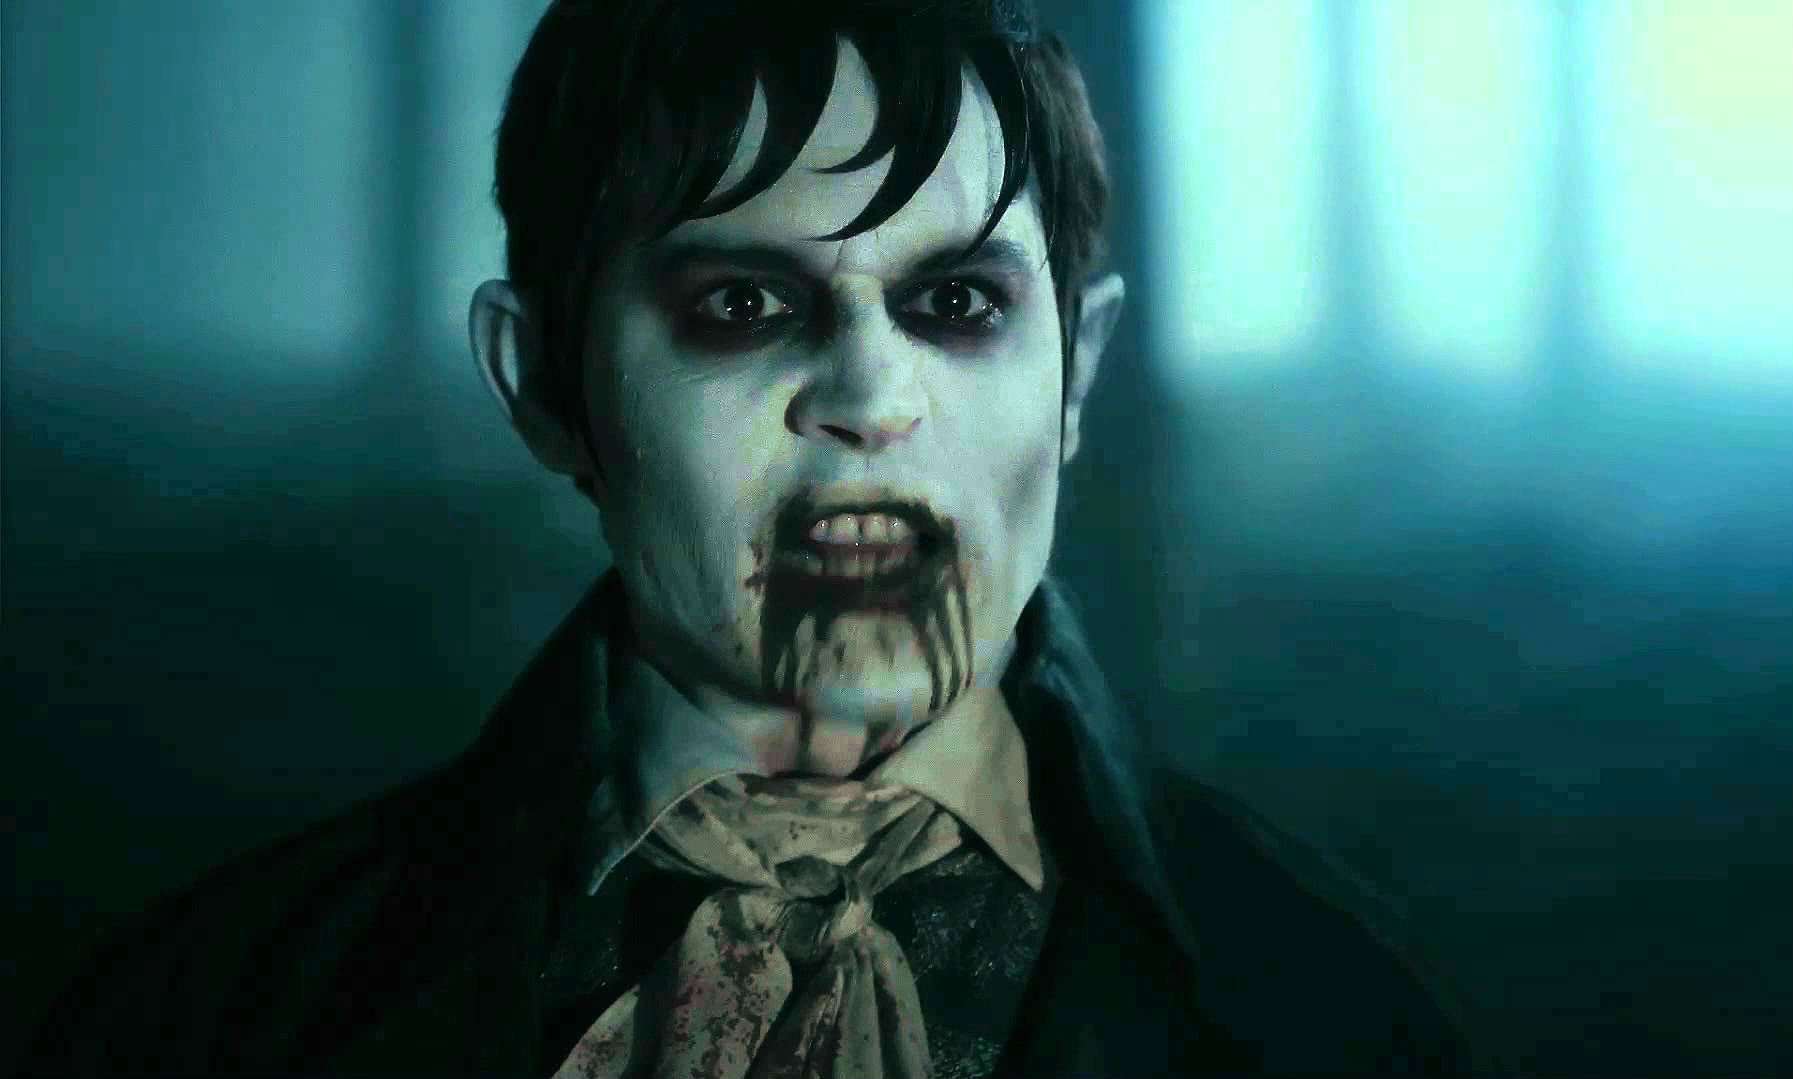 DARK SHADOWS comedy horror vampire depp wallpaper | 1793x1079 ...